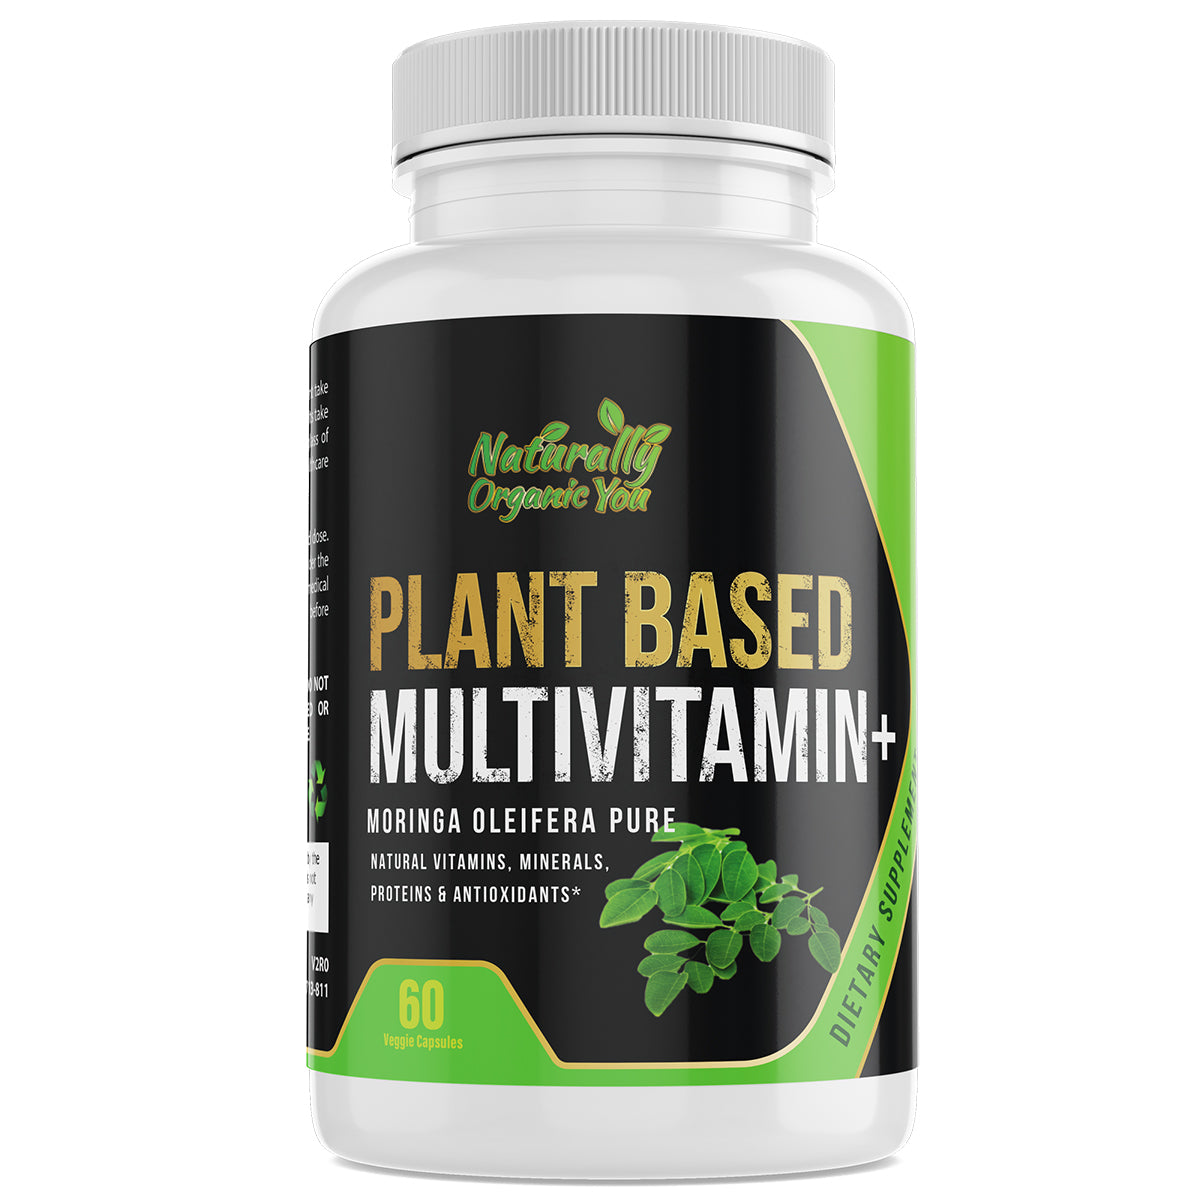 PLANT BASED MULTI-VITAMIN + (Moringa Oleifera)